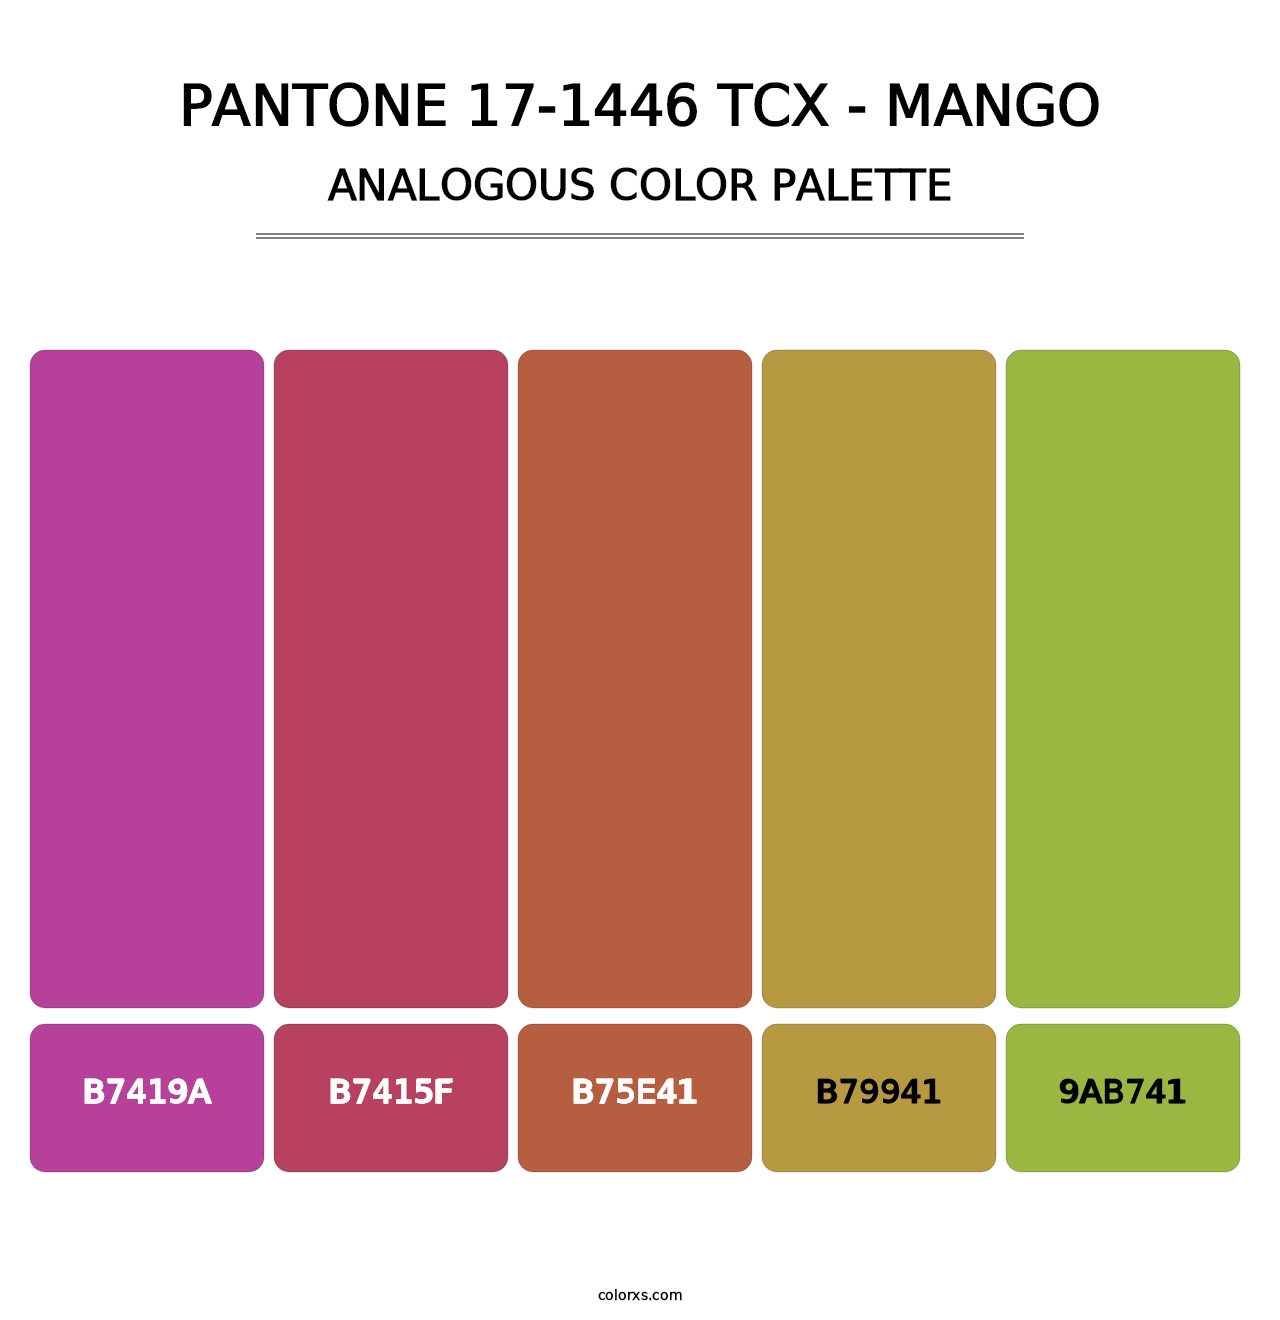 PANTONE 17-1446 TCX - Mango - Analogous Color Palette